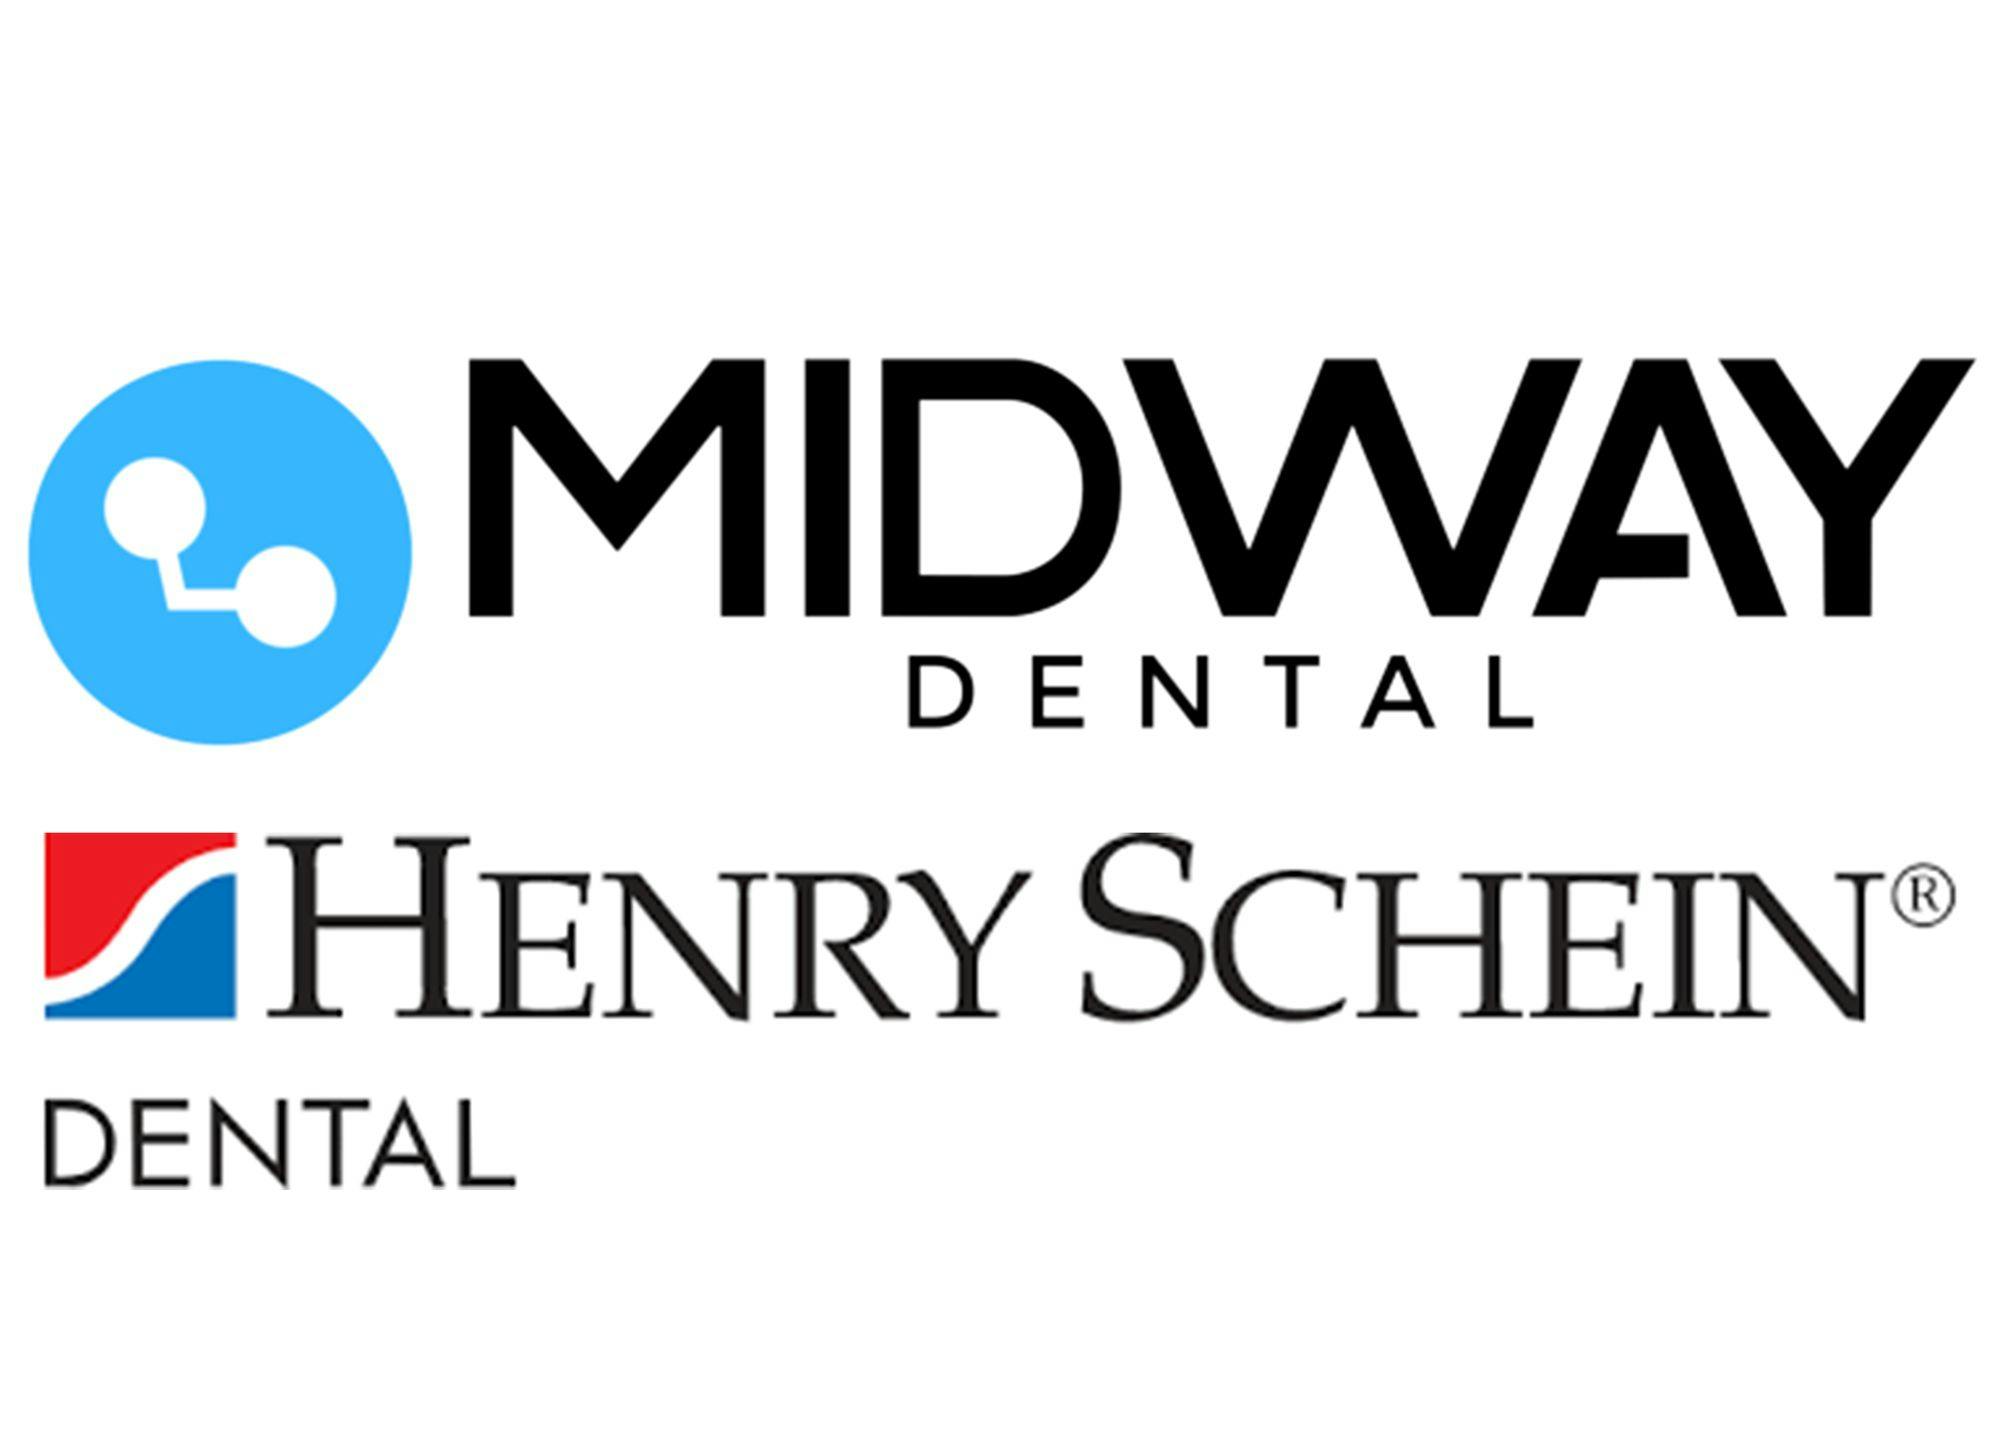 Henry Schein Acquires Midway Dental